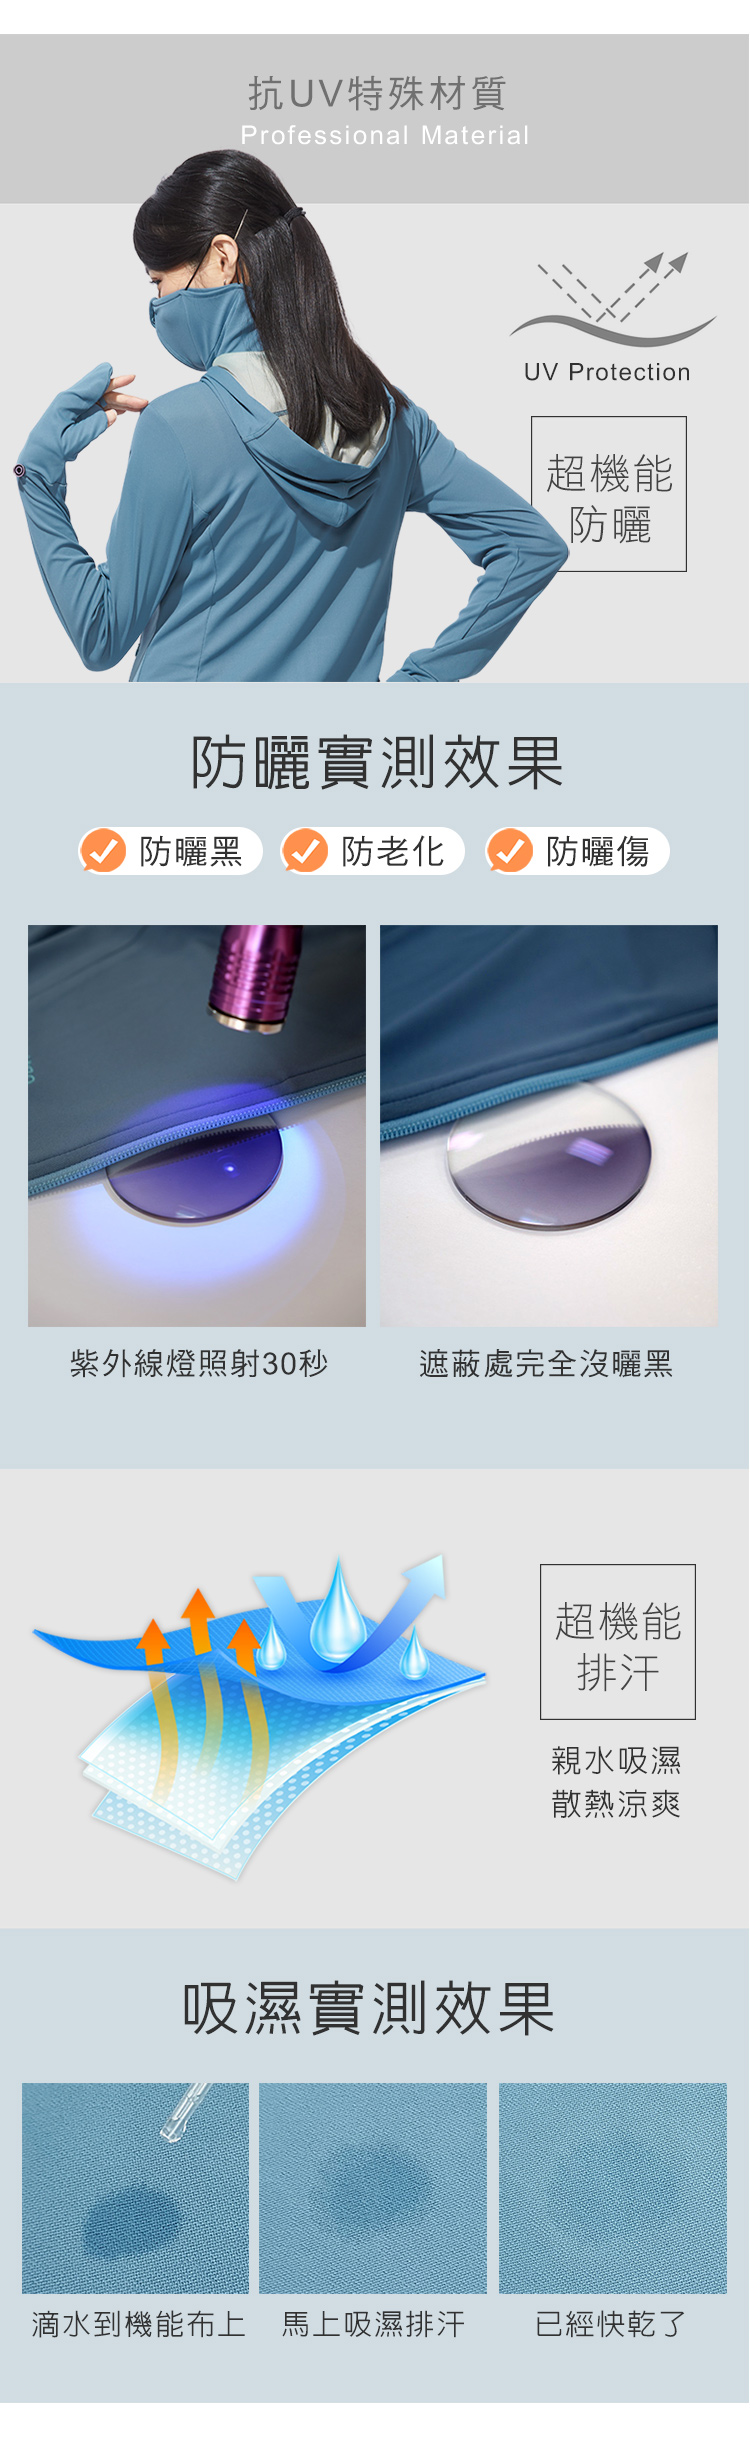 抗UV 超機能鉑金抗菌專利變形涼感防曬外套6899-藍色